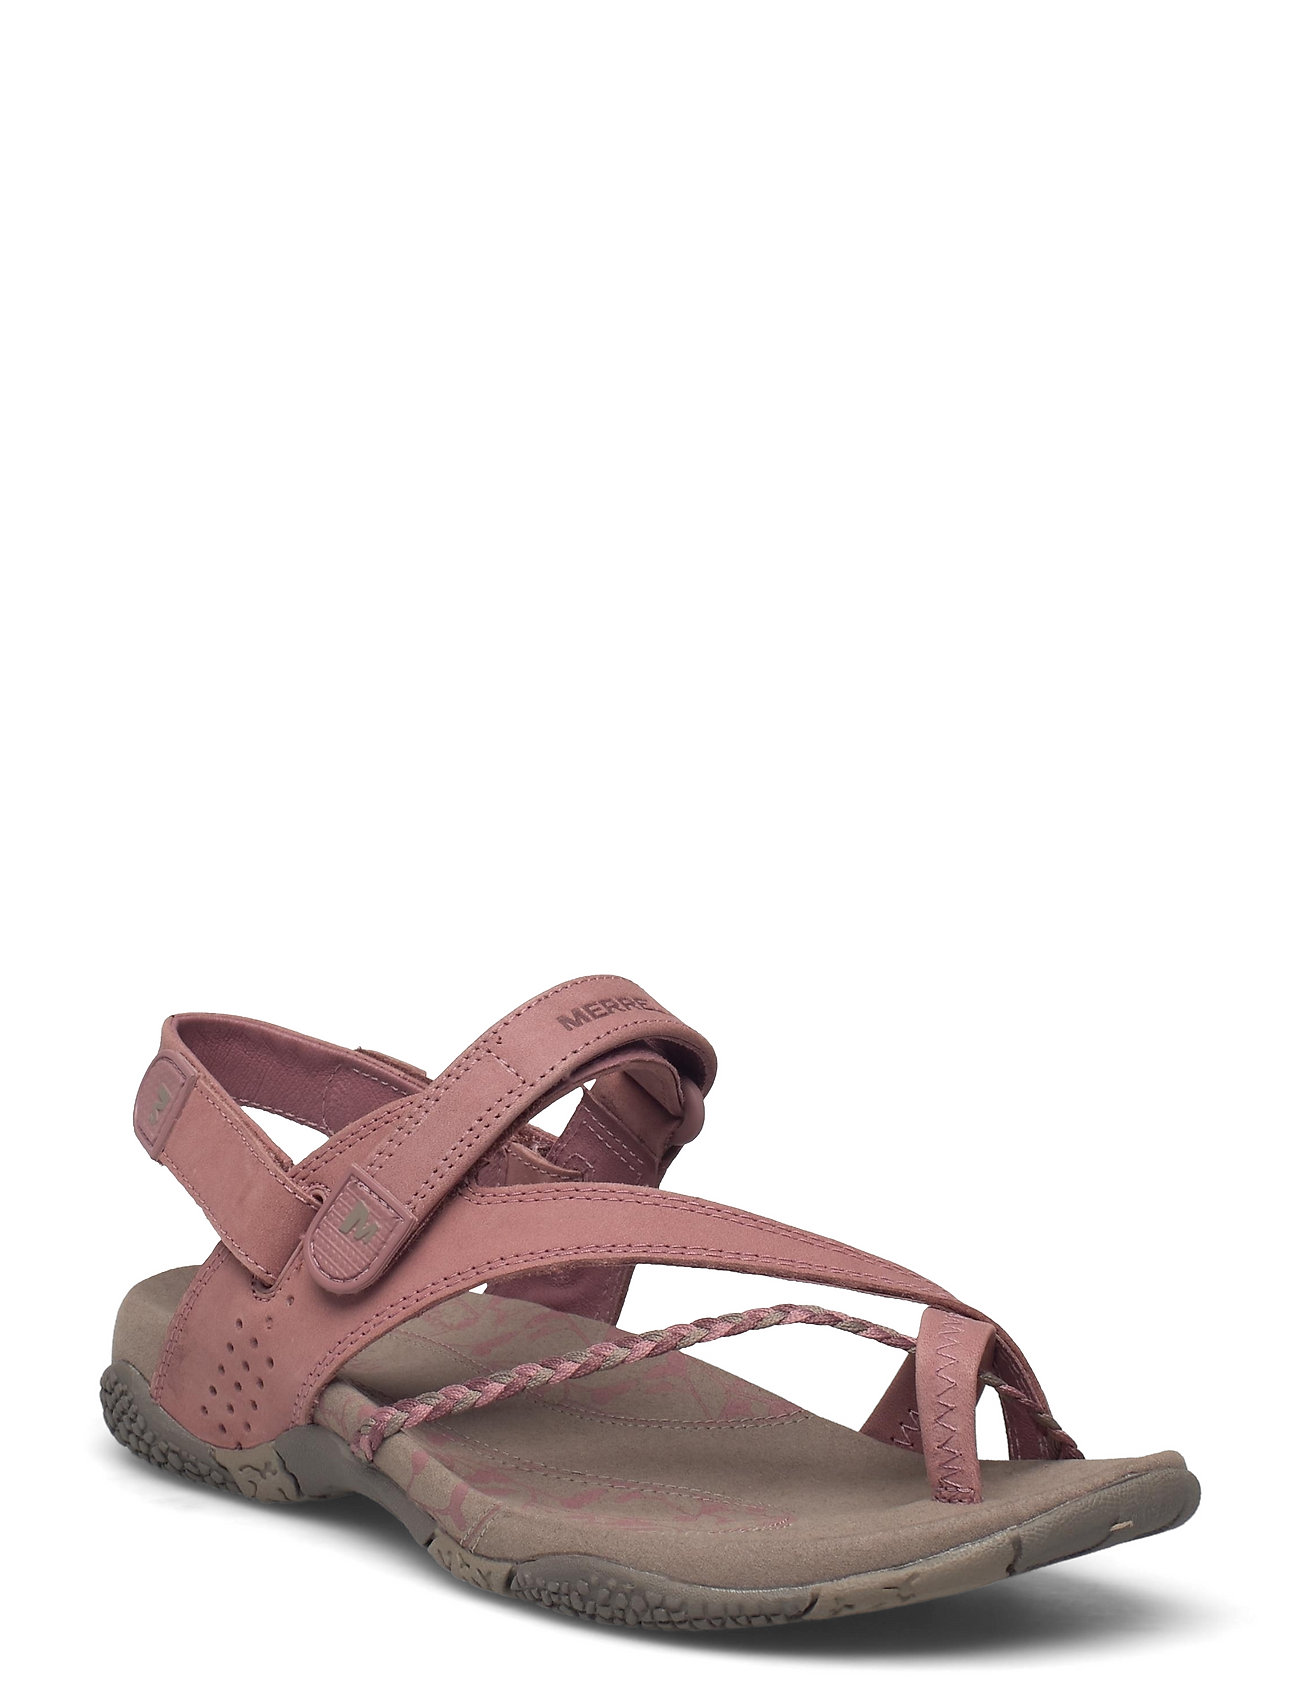 den første kvalitet hvordan Merrell Women's Siena Burlwood - Flat sandals - Boozt.com